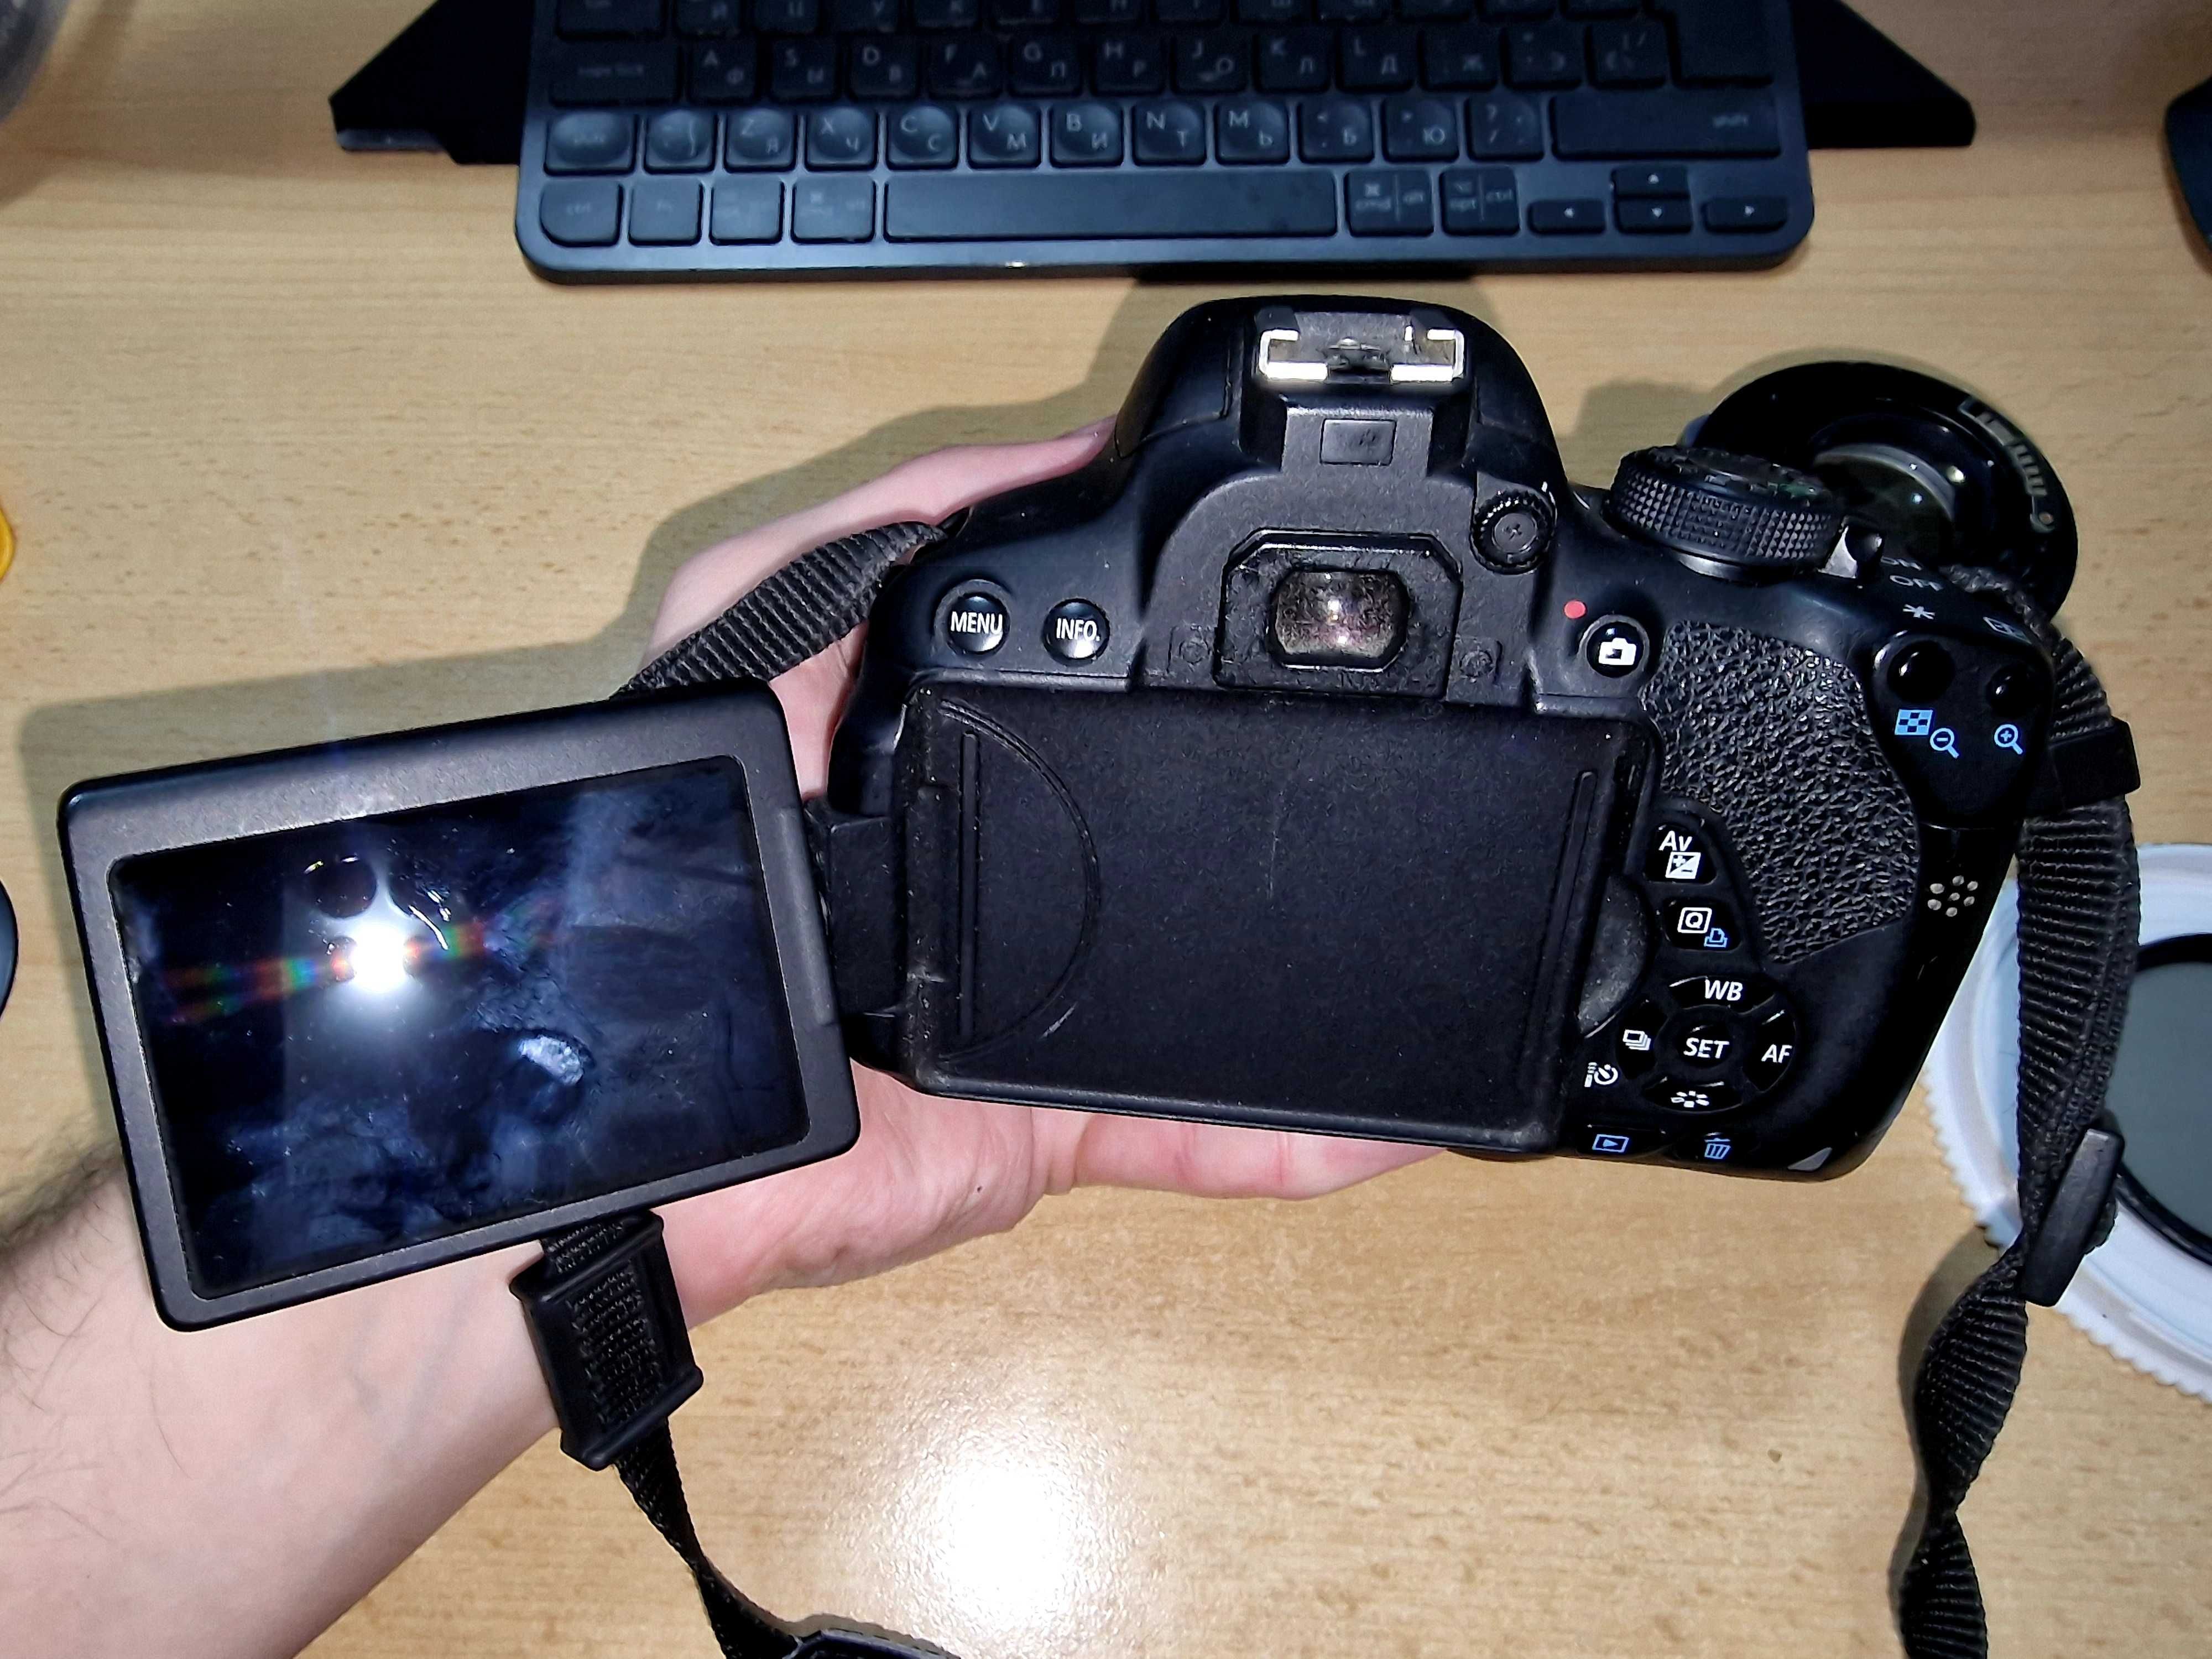 ZESTAW dla fotografa: kamera Canon 700D + obiektywy, filtry i więcej!